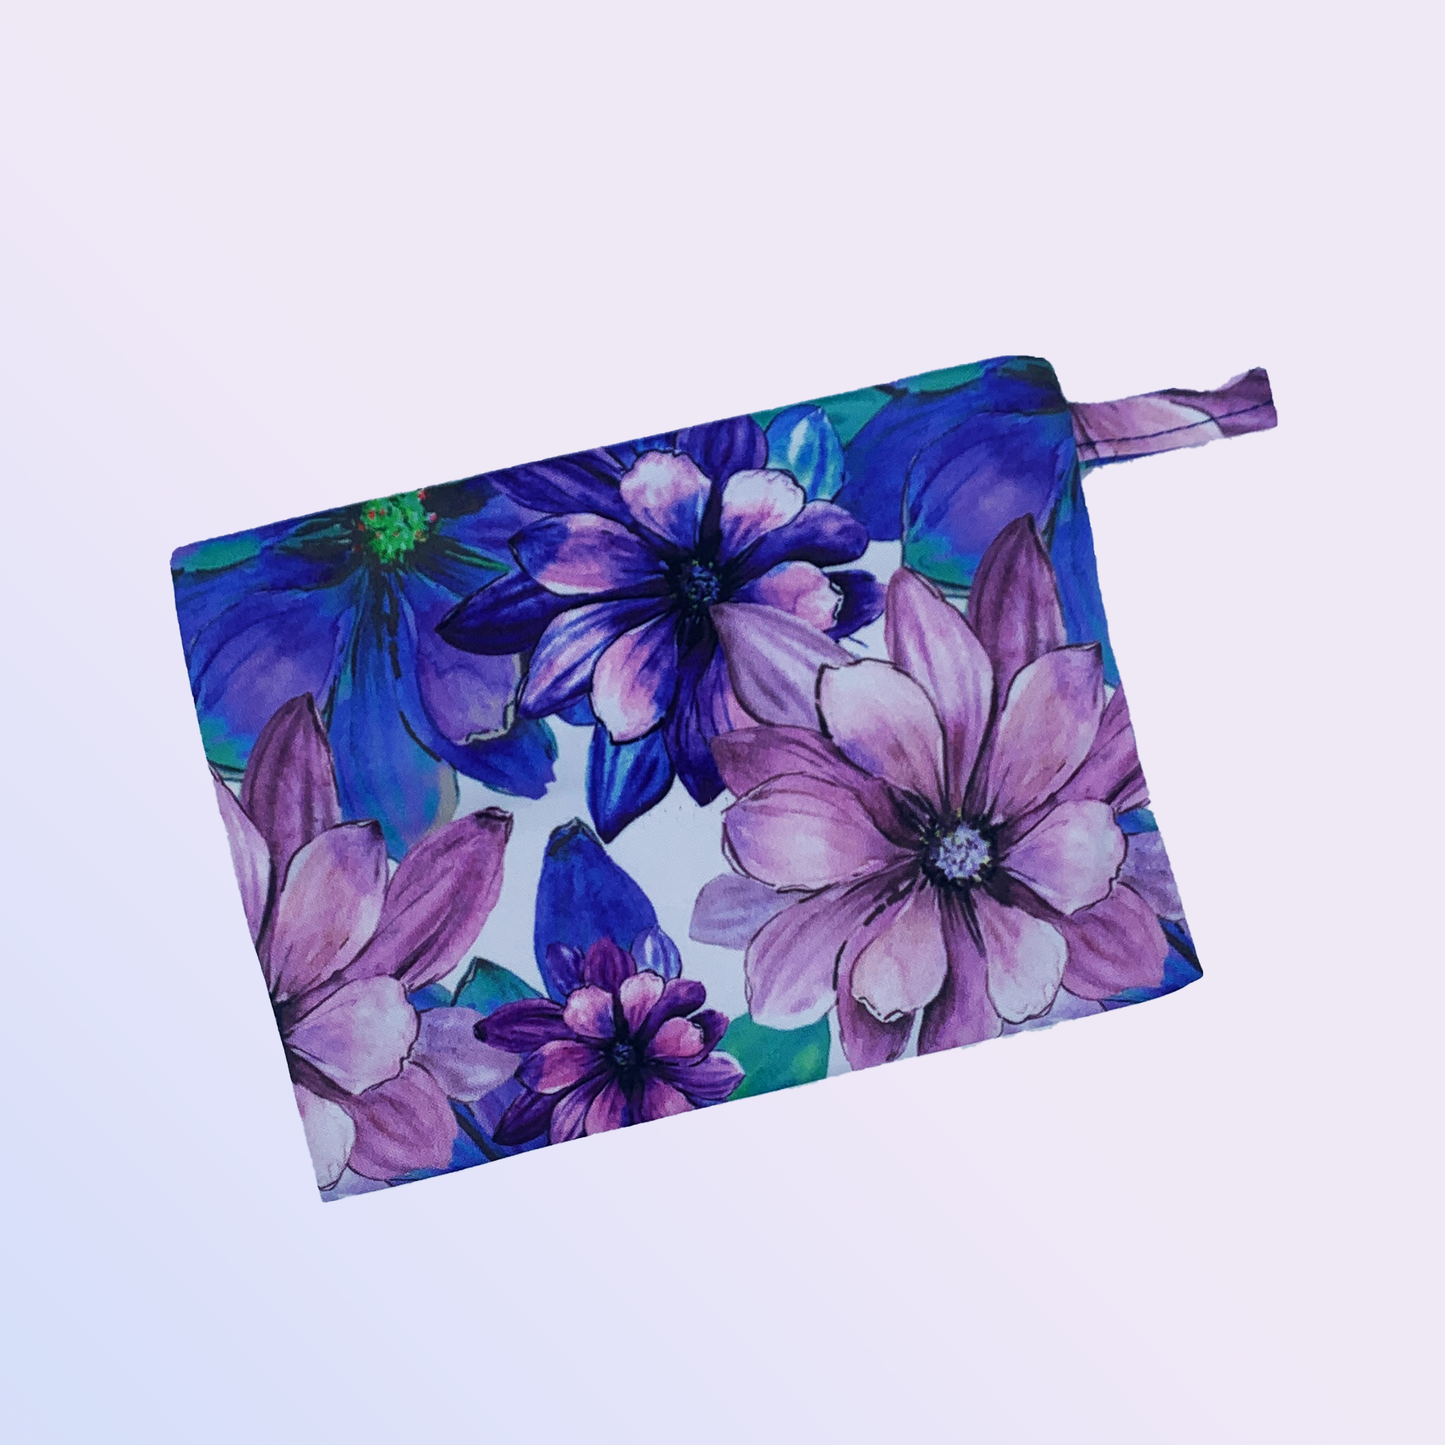  Pochette imperméable de transport design bleue fleuris à tirette pour ranger tes serviettes hygiéniques, cups ou culottes menstruelles - Pussyfy